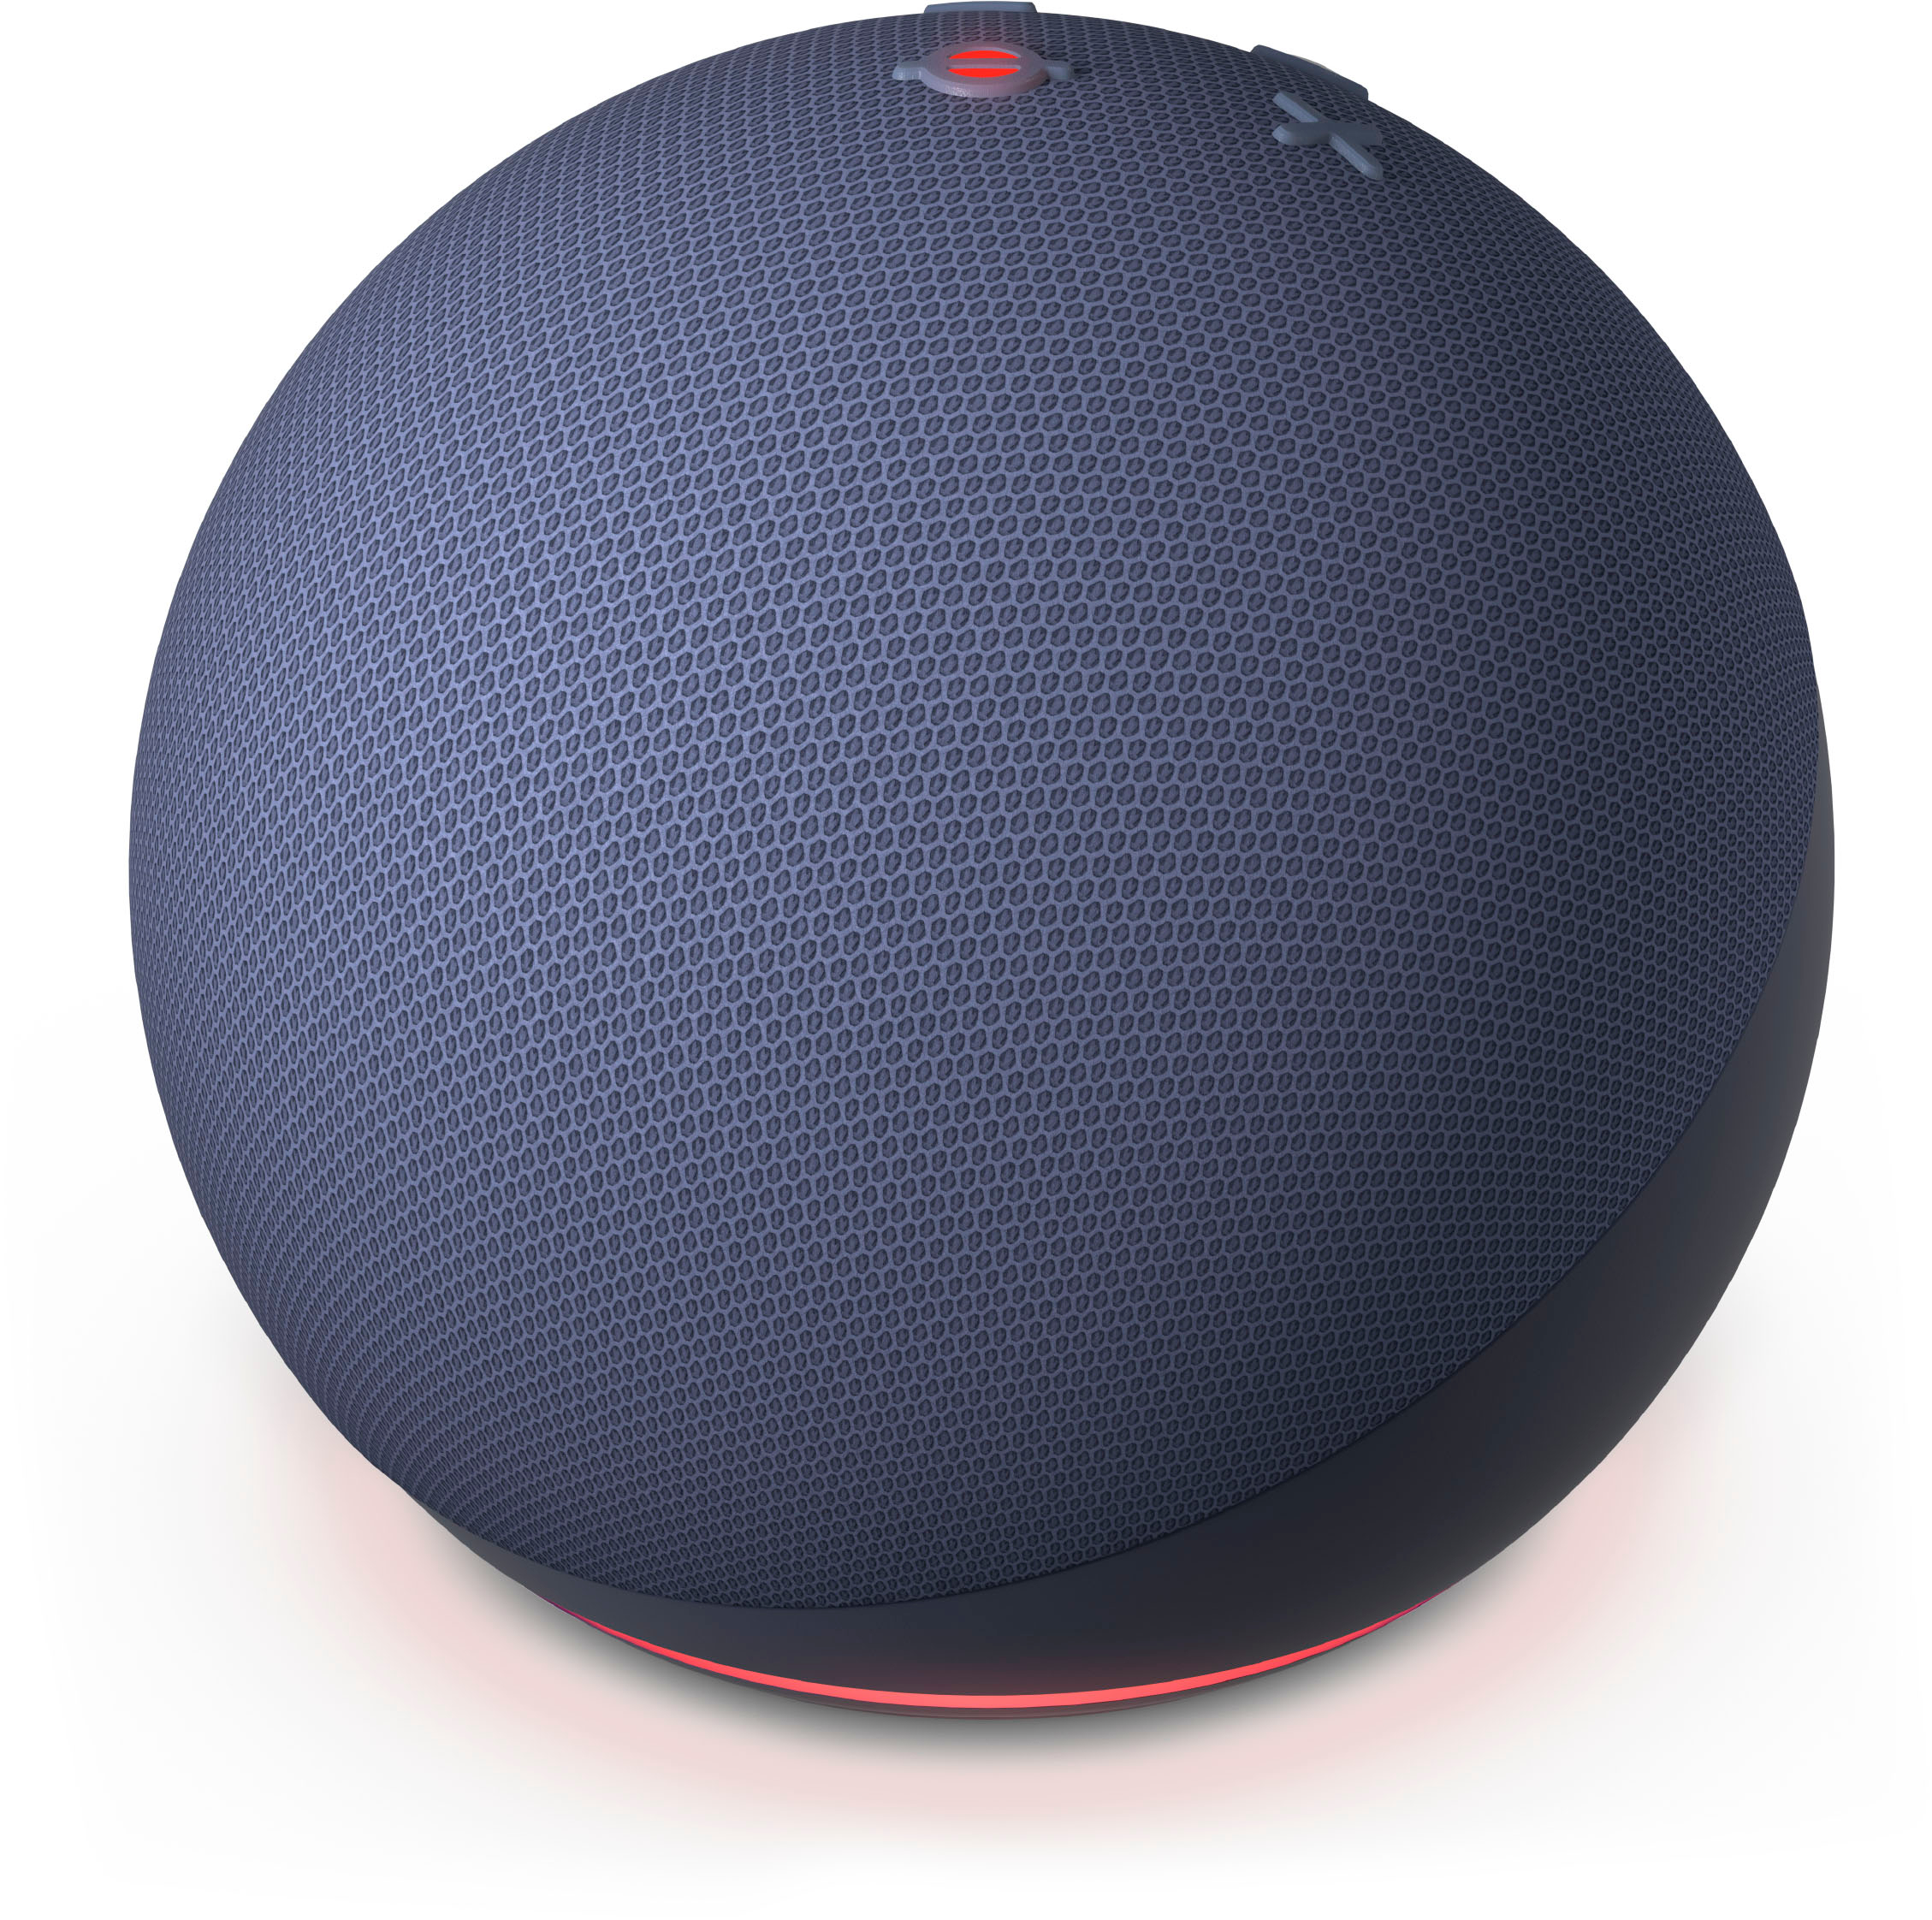  Echo Dot (5th Gen, 2022 Release) Smart Speaker with Alexa - Deep Sea Blue